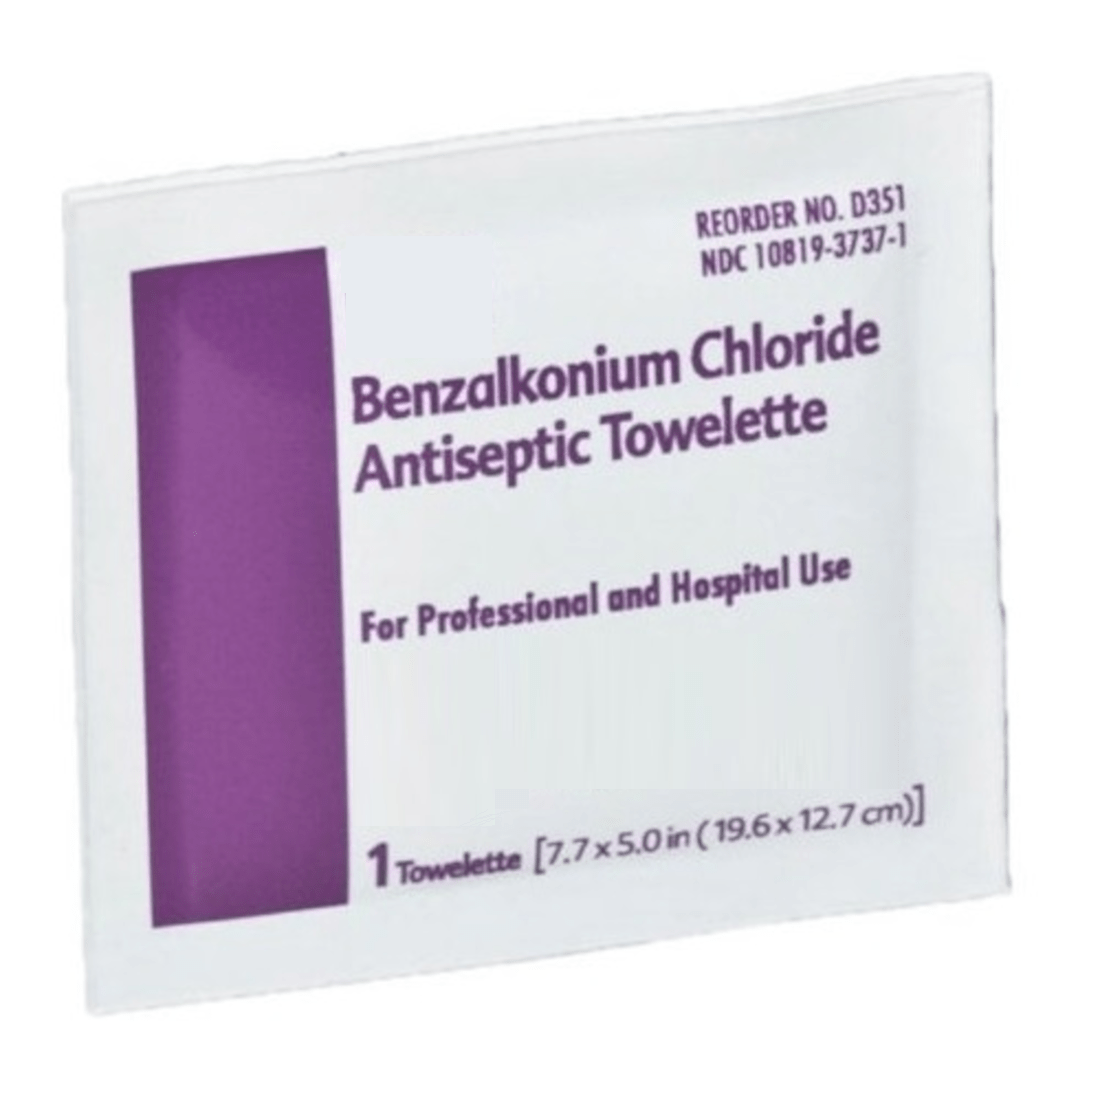 Serviettes antiseptiques de chlorure de benzalkonium